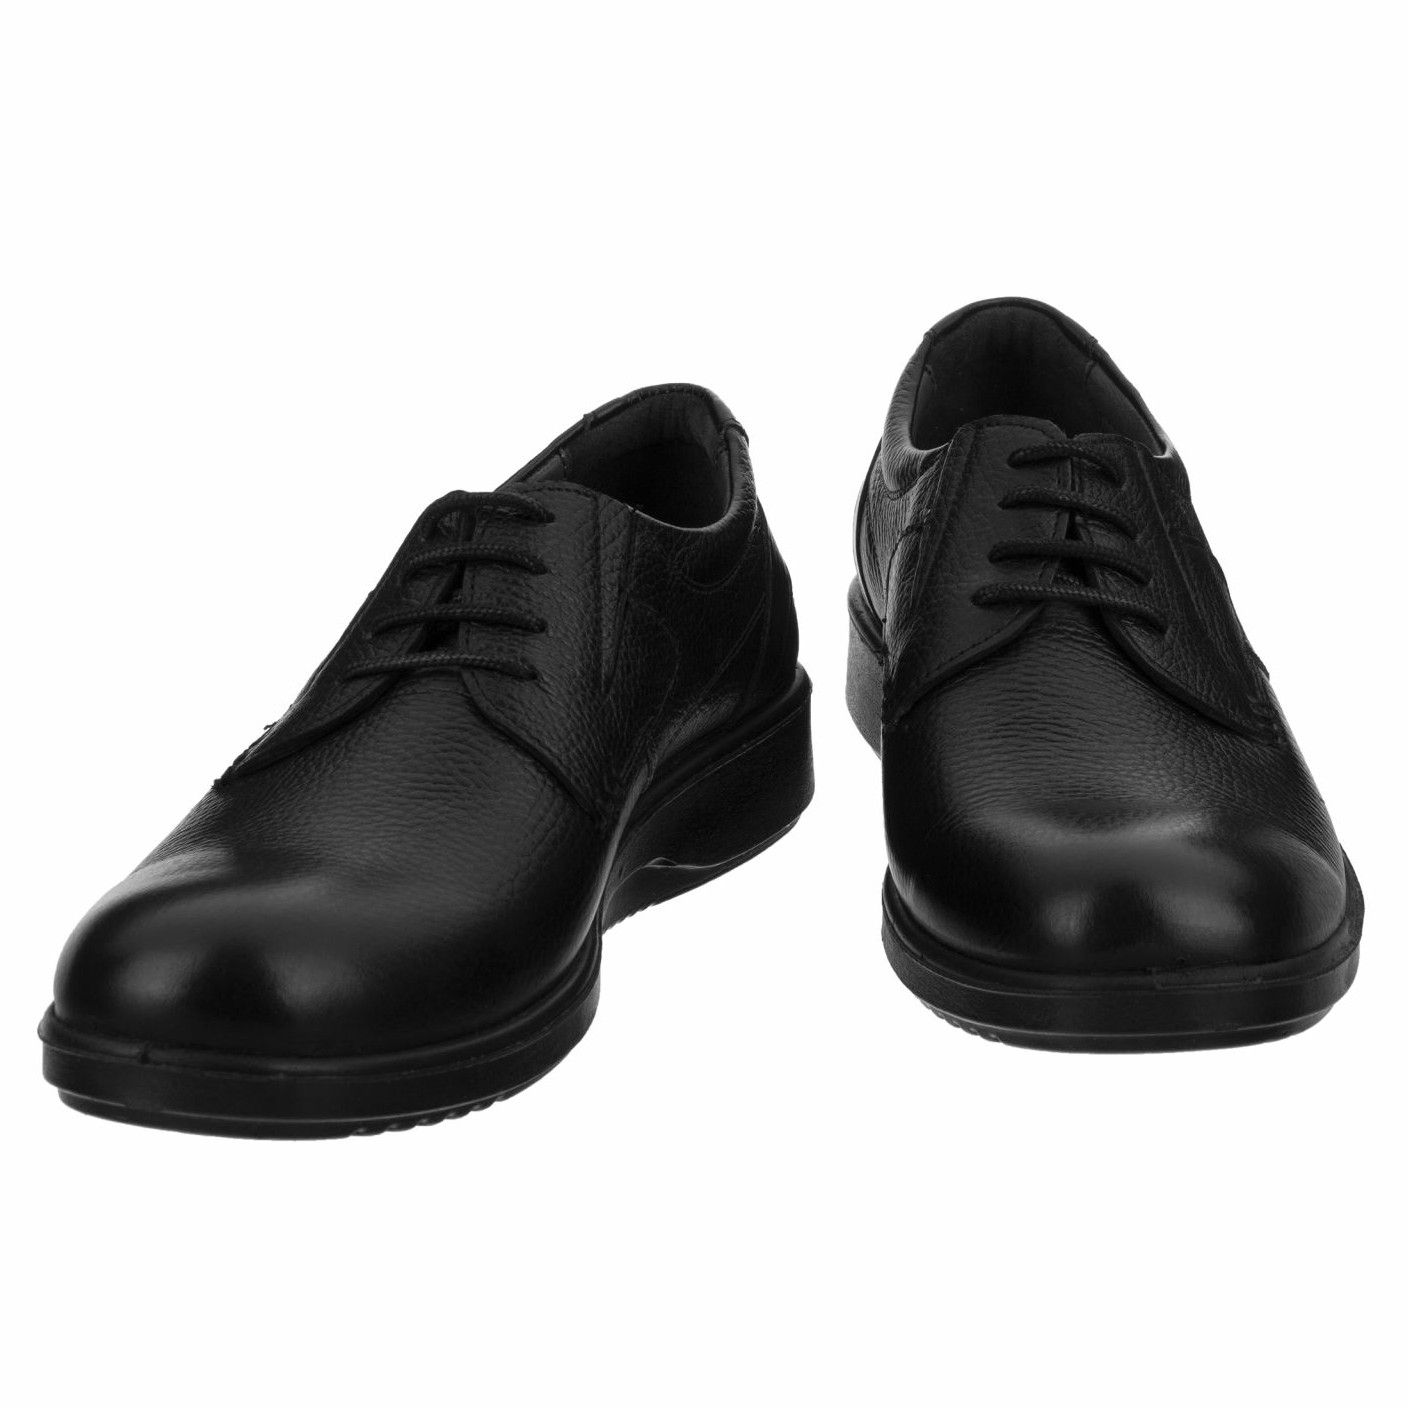 کفش روزمره مردانه بلوط مدل چرم طبیعی مدل B503101 -  - 6